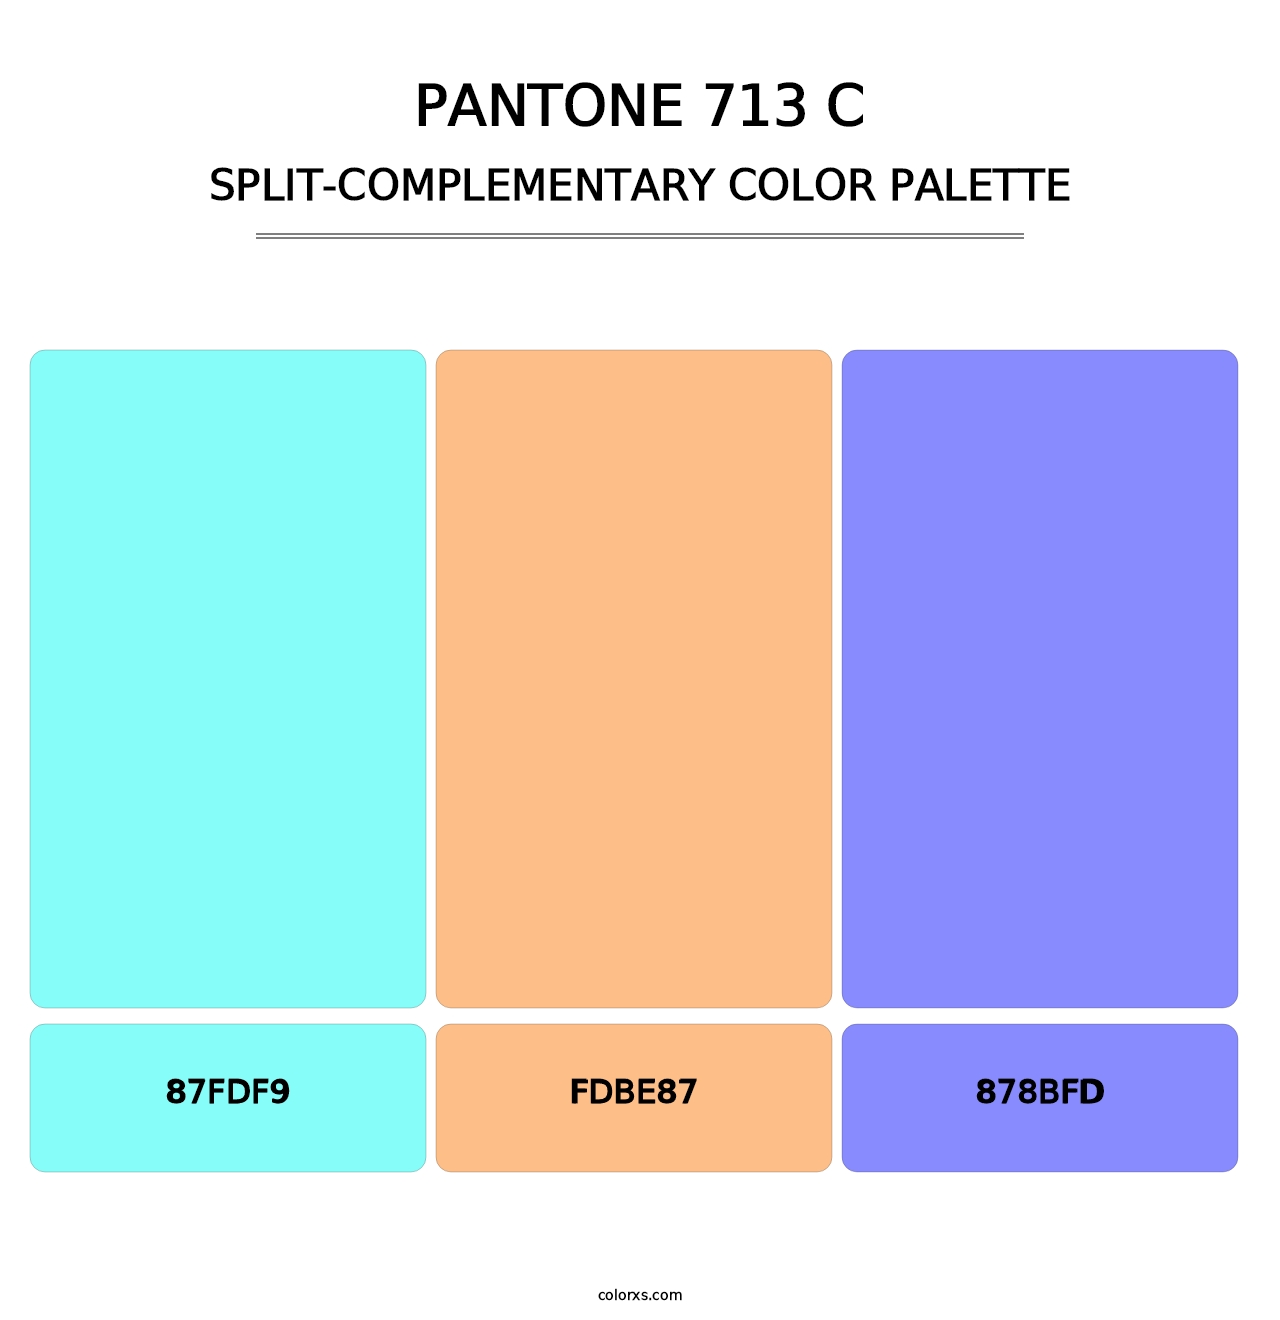 PANTONE 713 C - Split-Complementary Color Palette